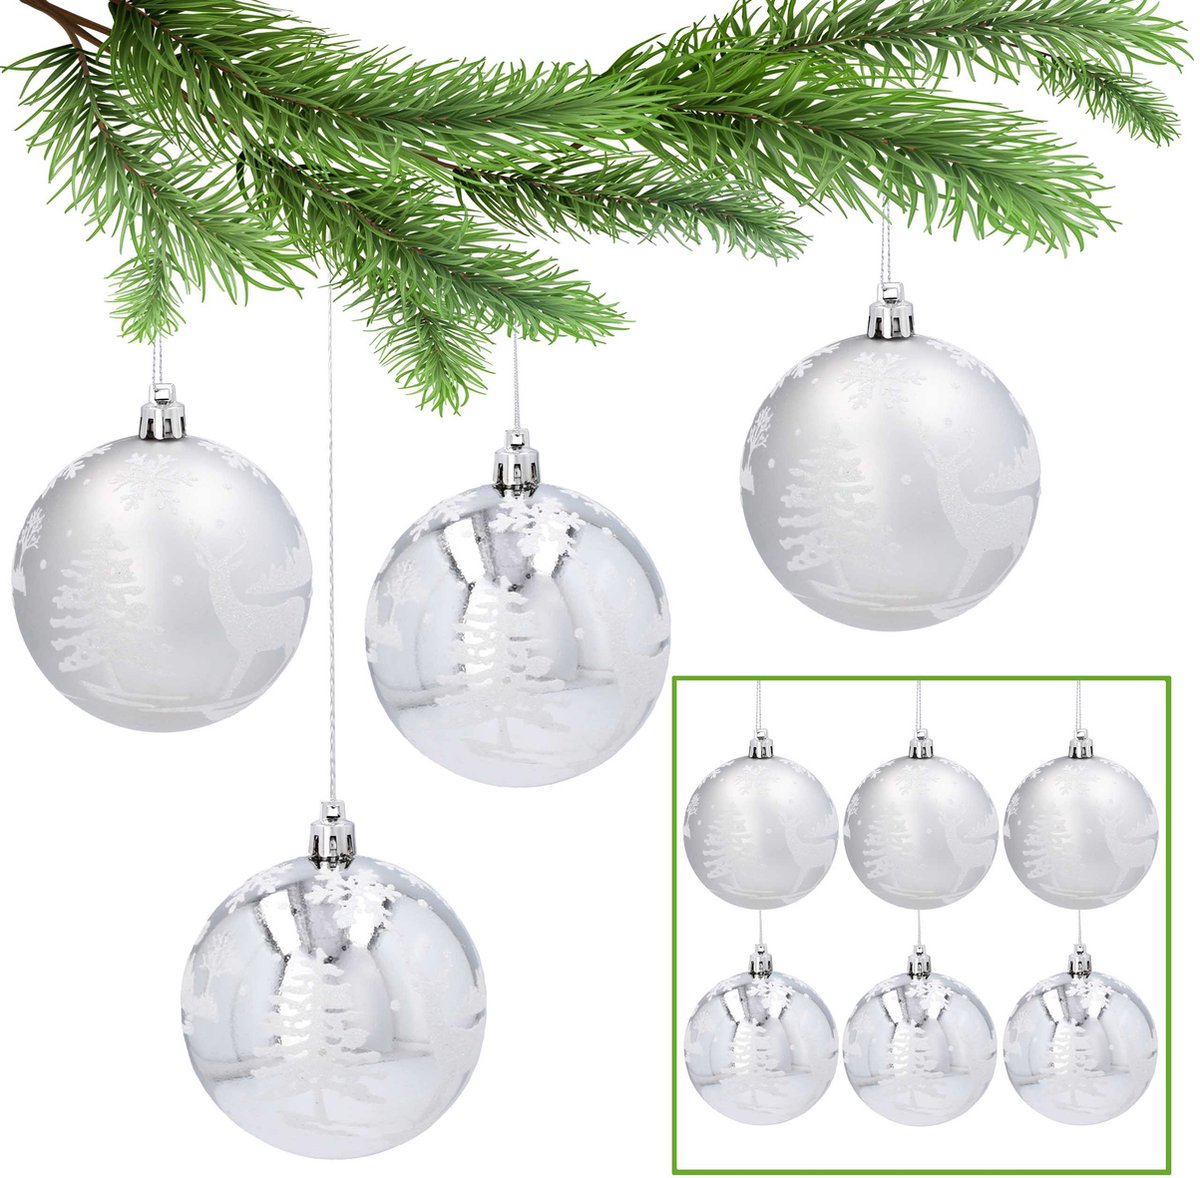 Set kunststof kerstballen 8 cm, zilveren kerstballen, kerstboomversieringen, 6 stuks.